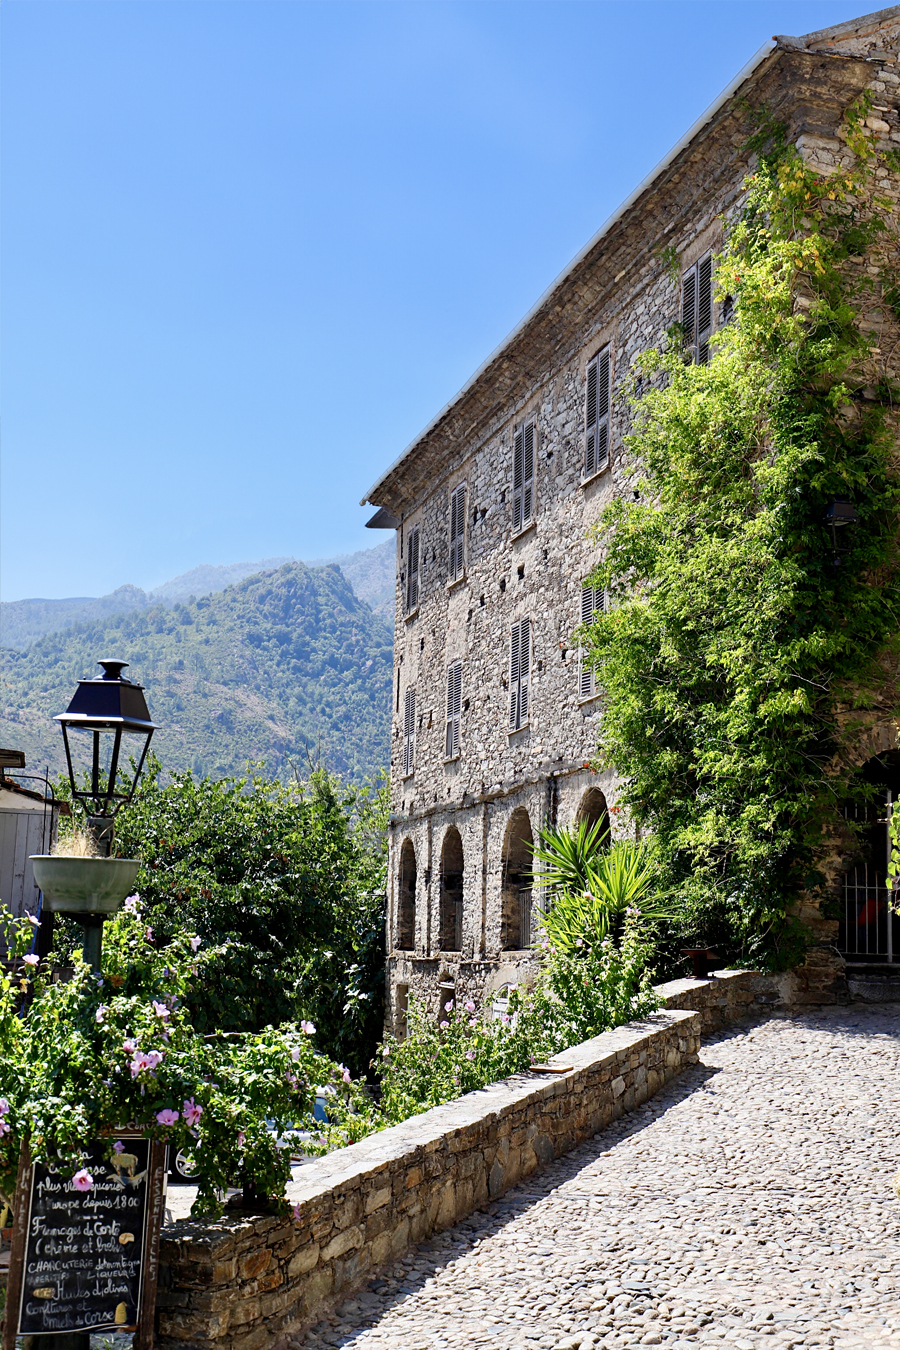 Facade of a Corsican house in the village of Corte. ©2022 Mathieu Improvisato